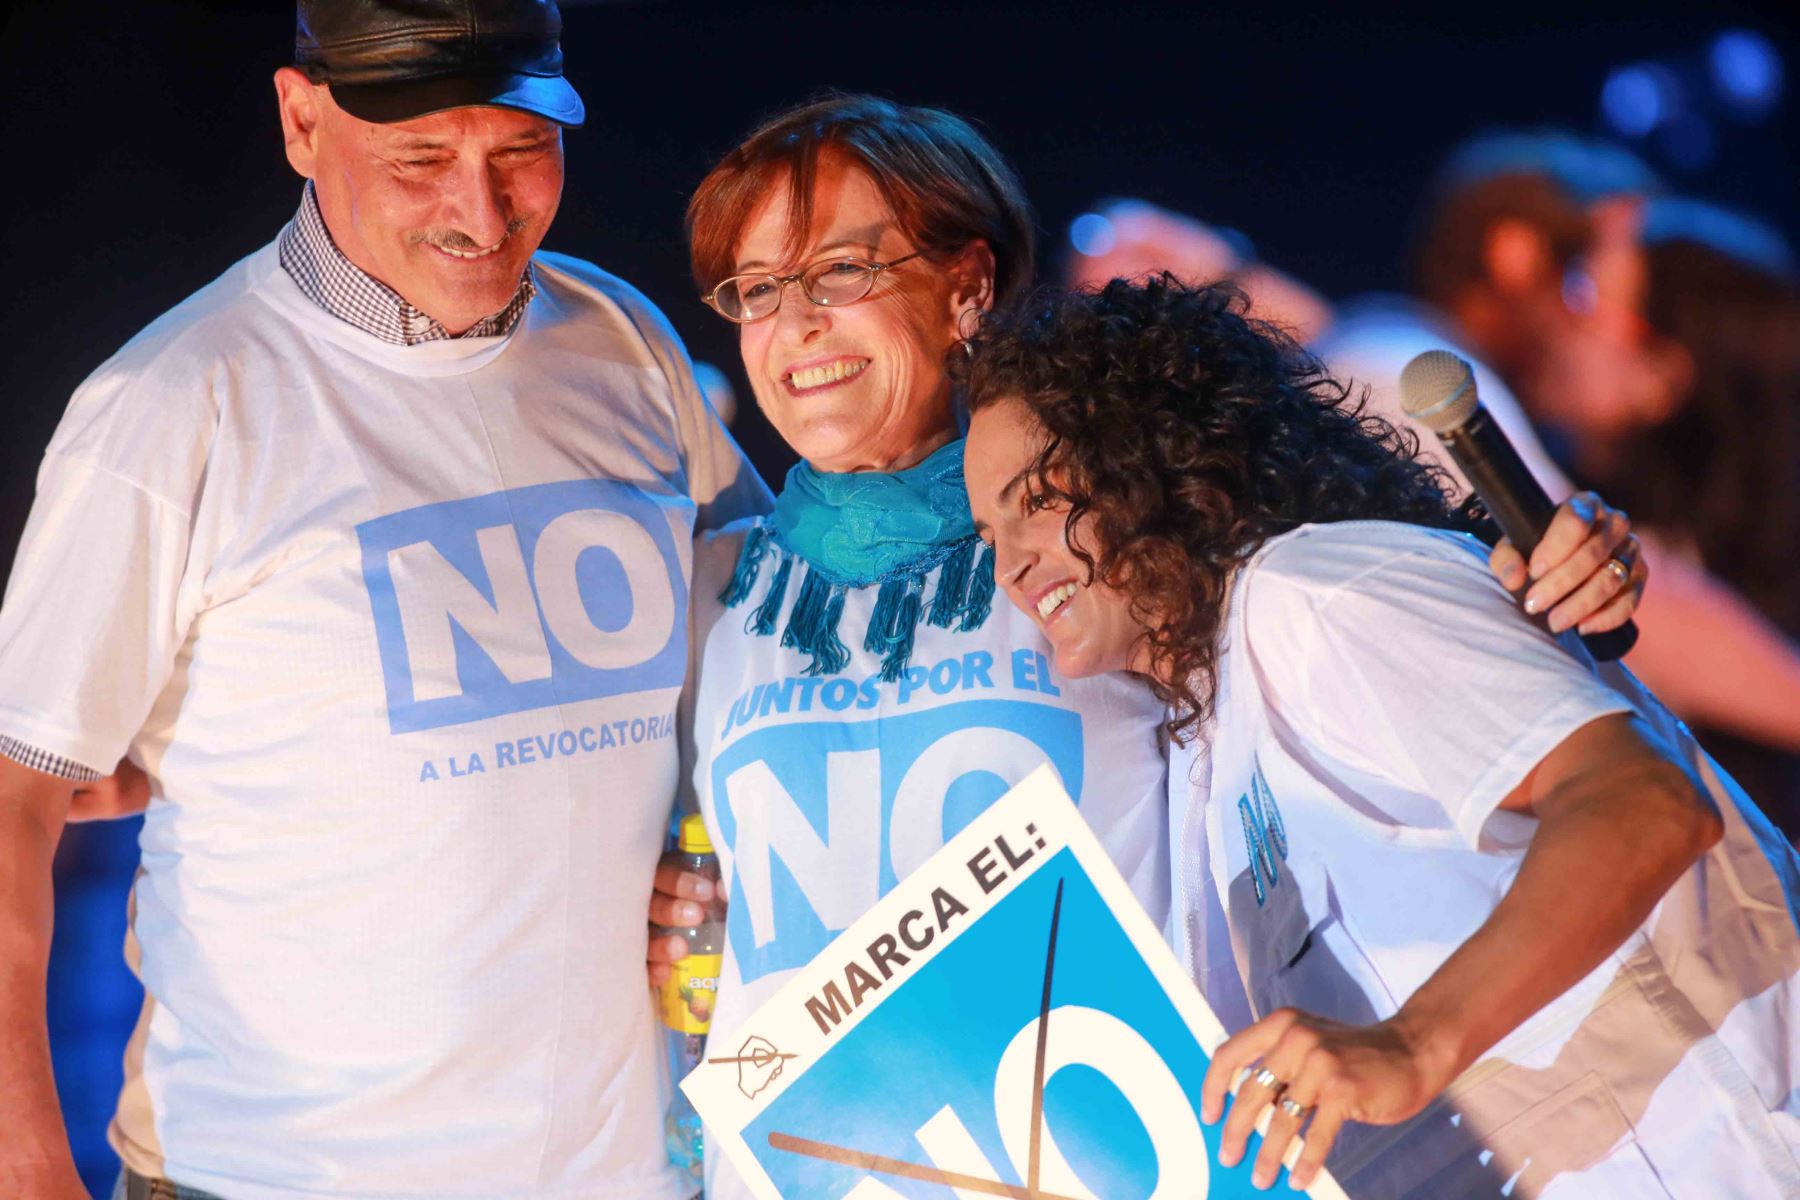 Lima - 14 marzo 2013 / La alcaldesa de Lima, Susana Villarán, encabezó el mitin de cierre de campaña por el NO a la revocatoria.